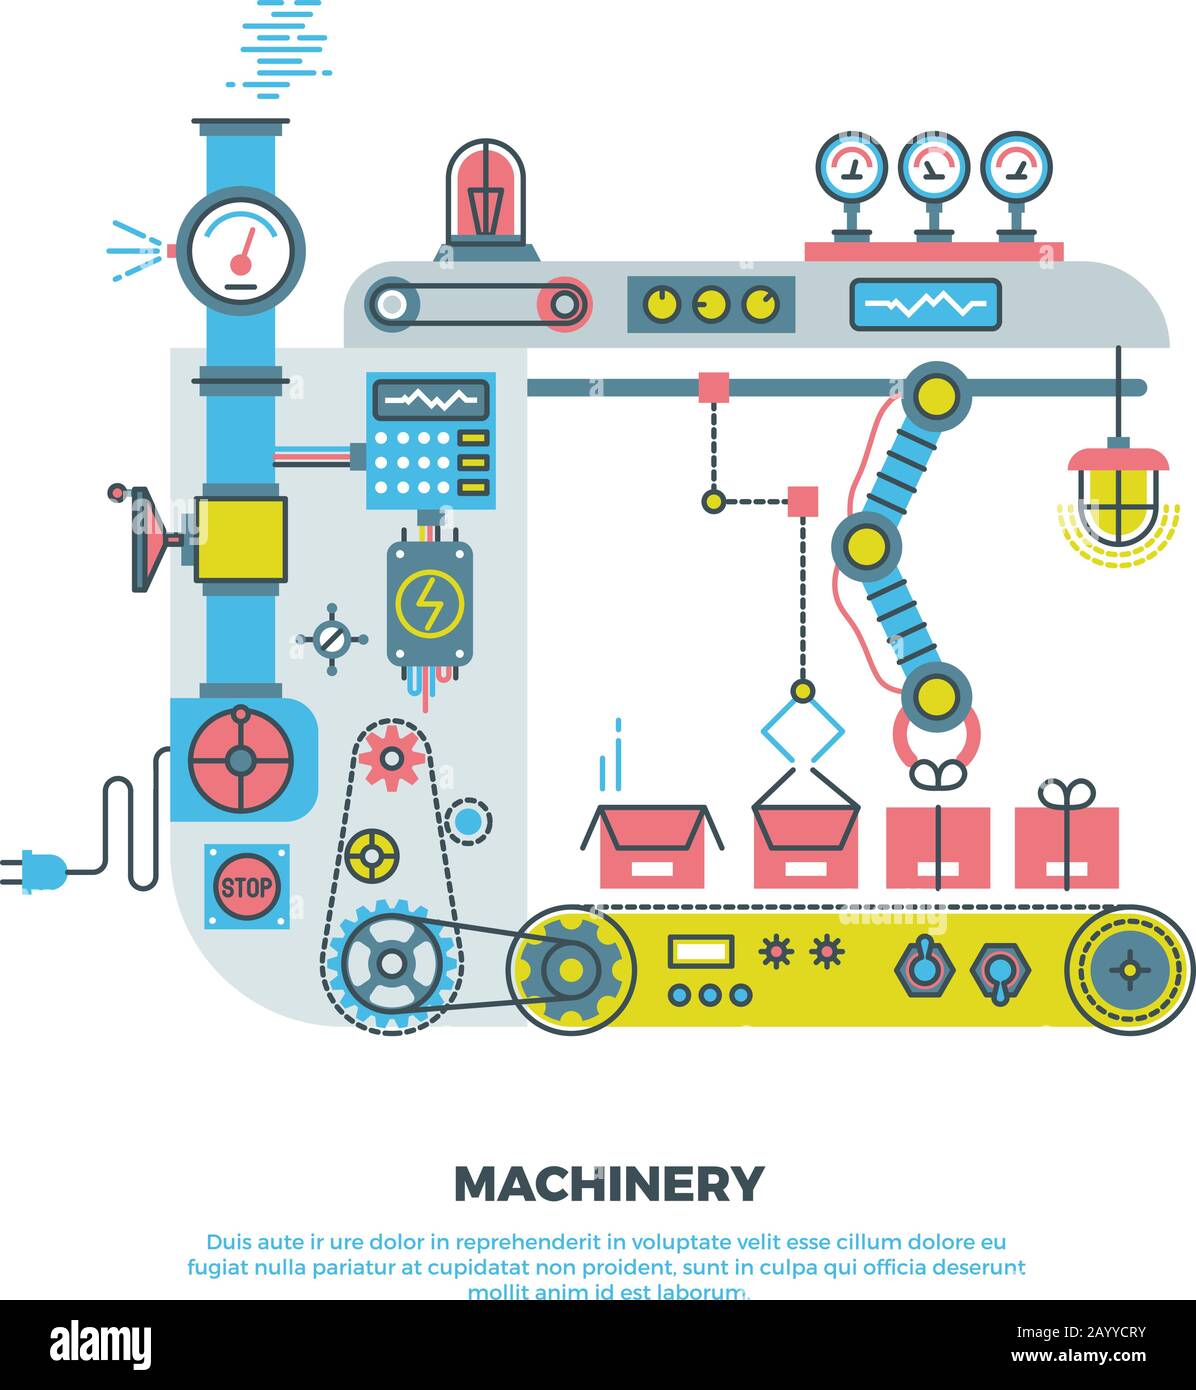 Máquina robótica industrial abstracta, maquinaria en estilo vectorial plano. Ilustración de robots de maquinaria industrial y tecnología de maquinaria transportadora Ilustración del Vector